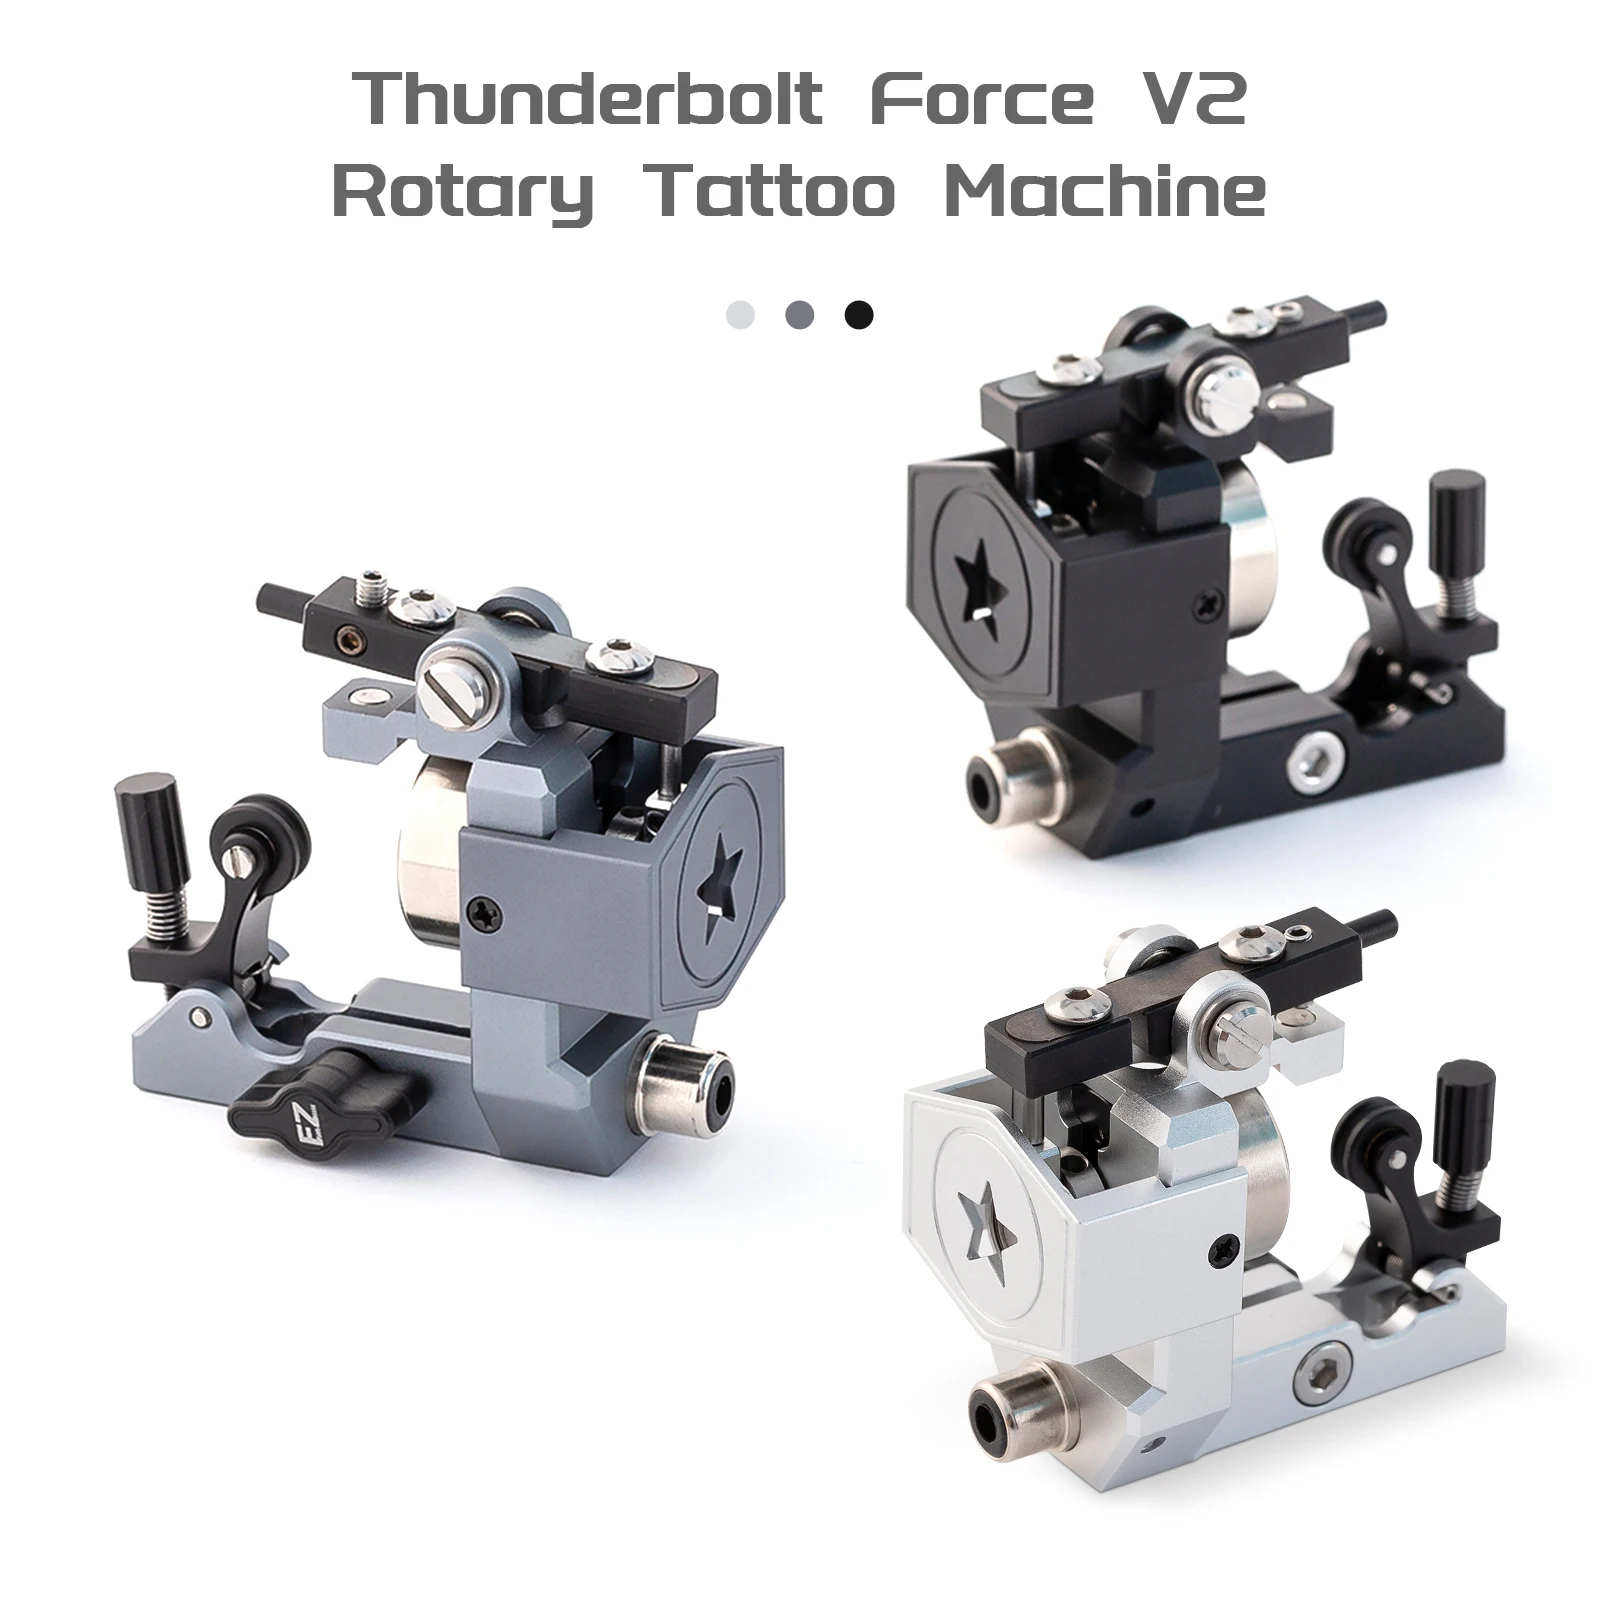 

EZ Thunderbolt Force V2 Rotary Tattoo Machine Adjustable Stroke Brushless Motor Tattoo gun for Standard /Cartridge Needles